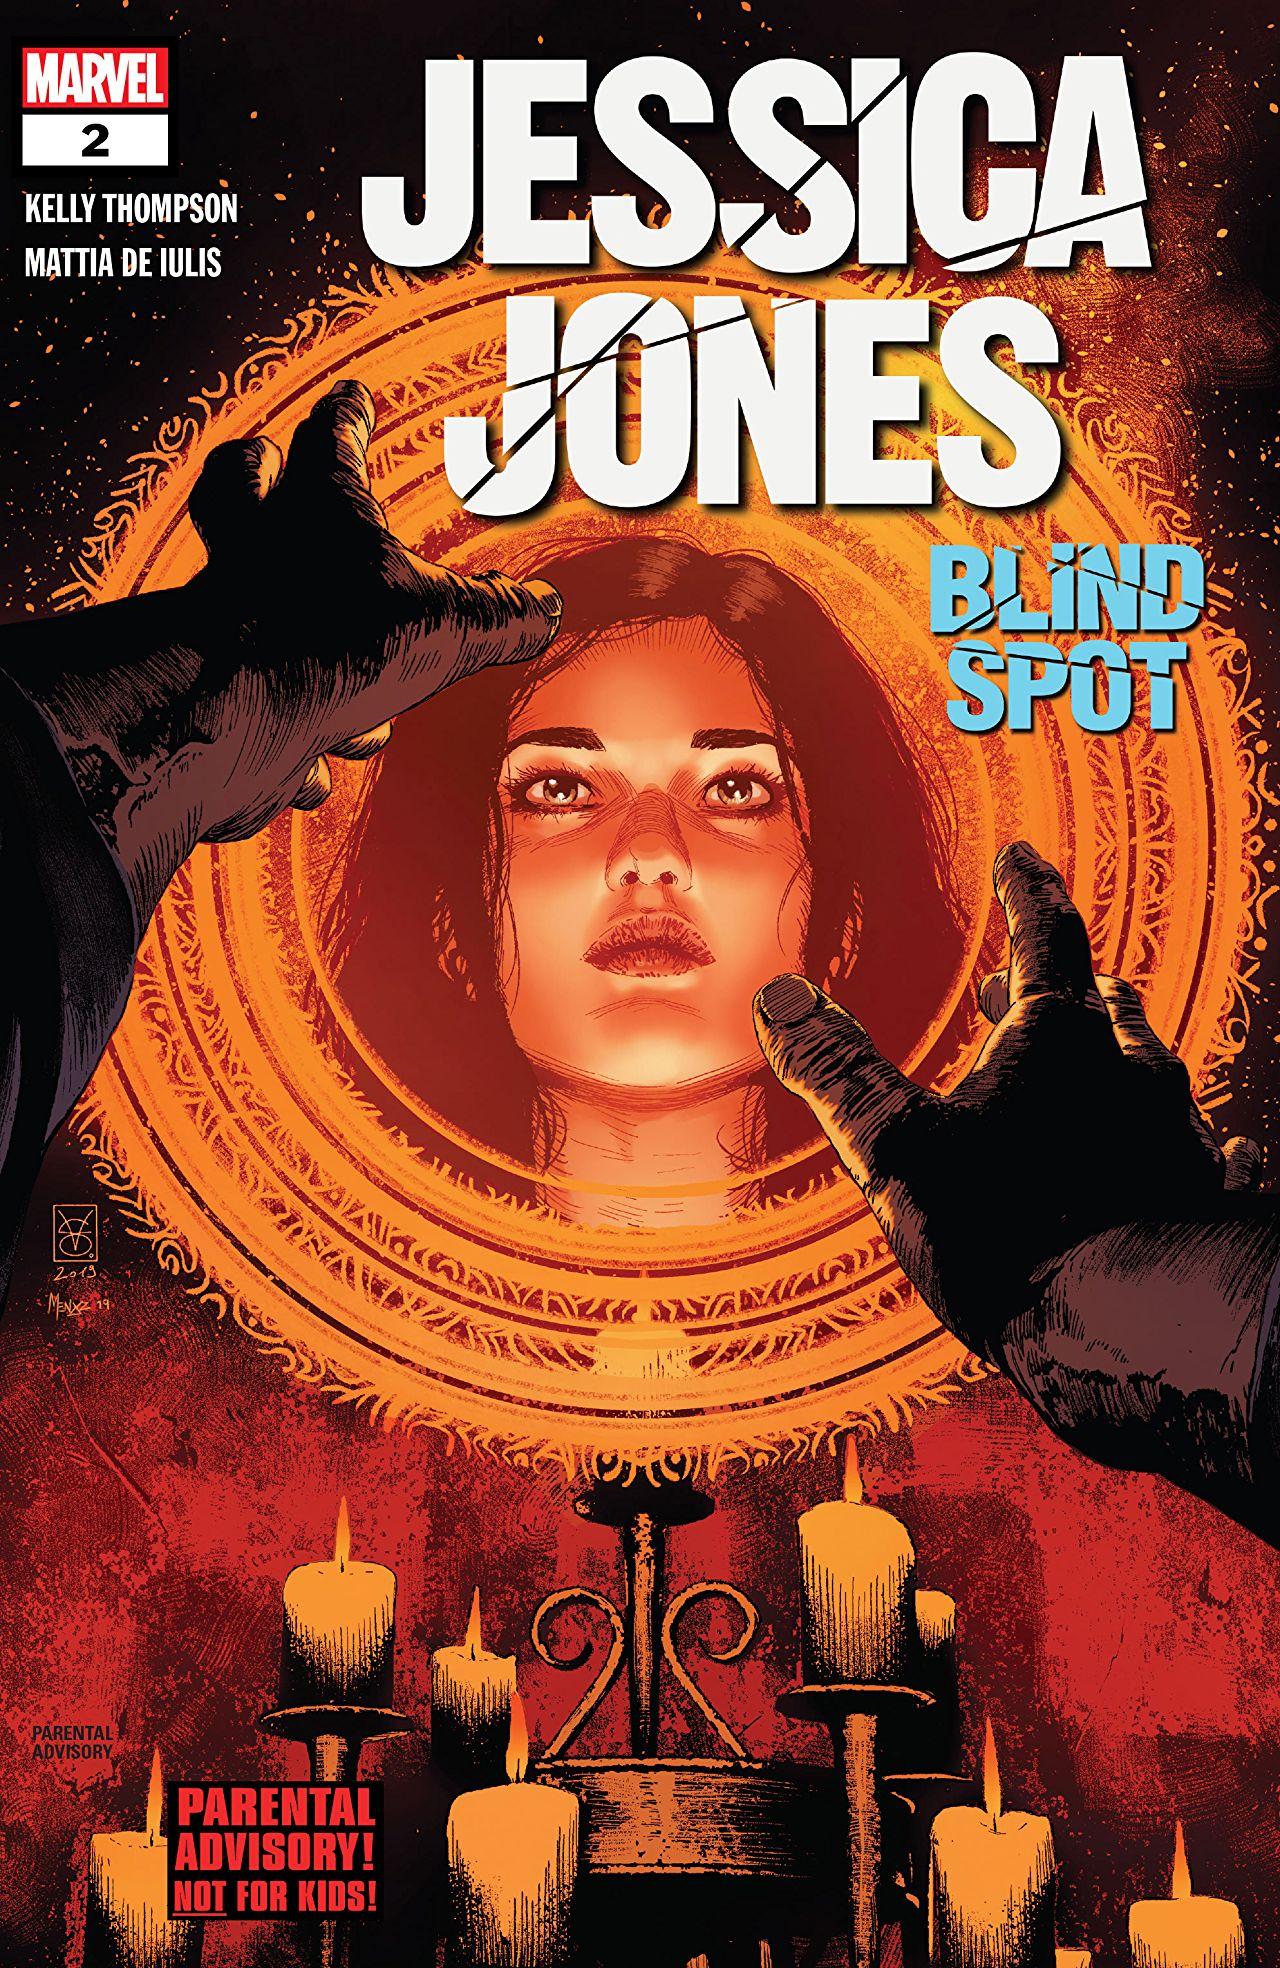 Jessica Jones Vol. 3 #2